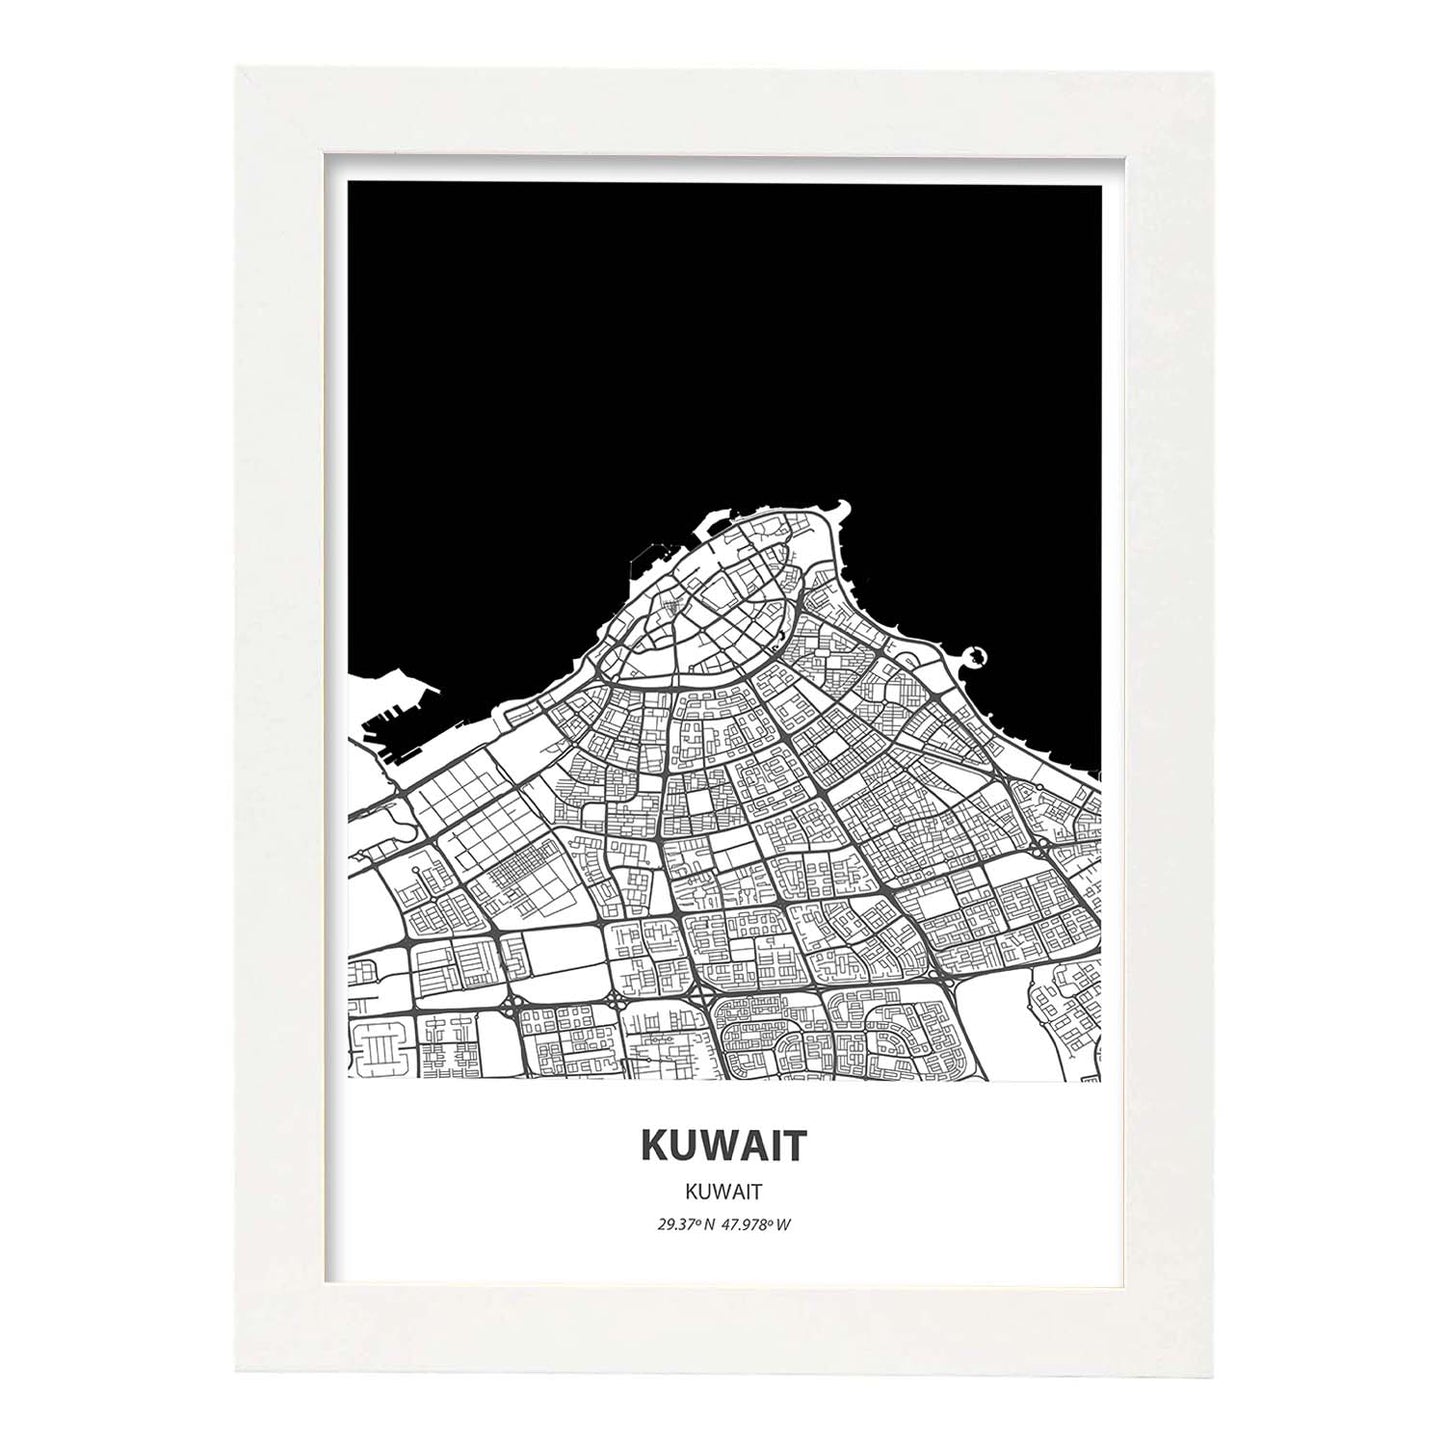 Poster con mapa de Kuwait - Kuwait. Láminas de ciudades de Oriente Medio con mares y ríos en color negro.-Artwork-Nacnic-A4-Marco Blanco-Nacnic Estudio SL